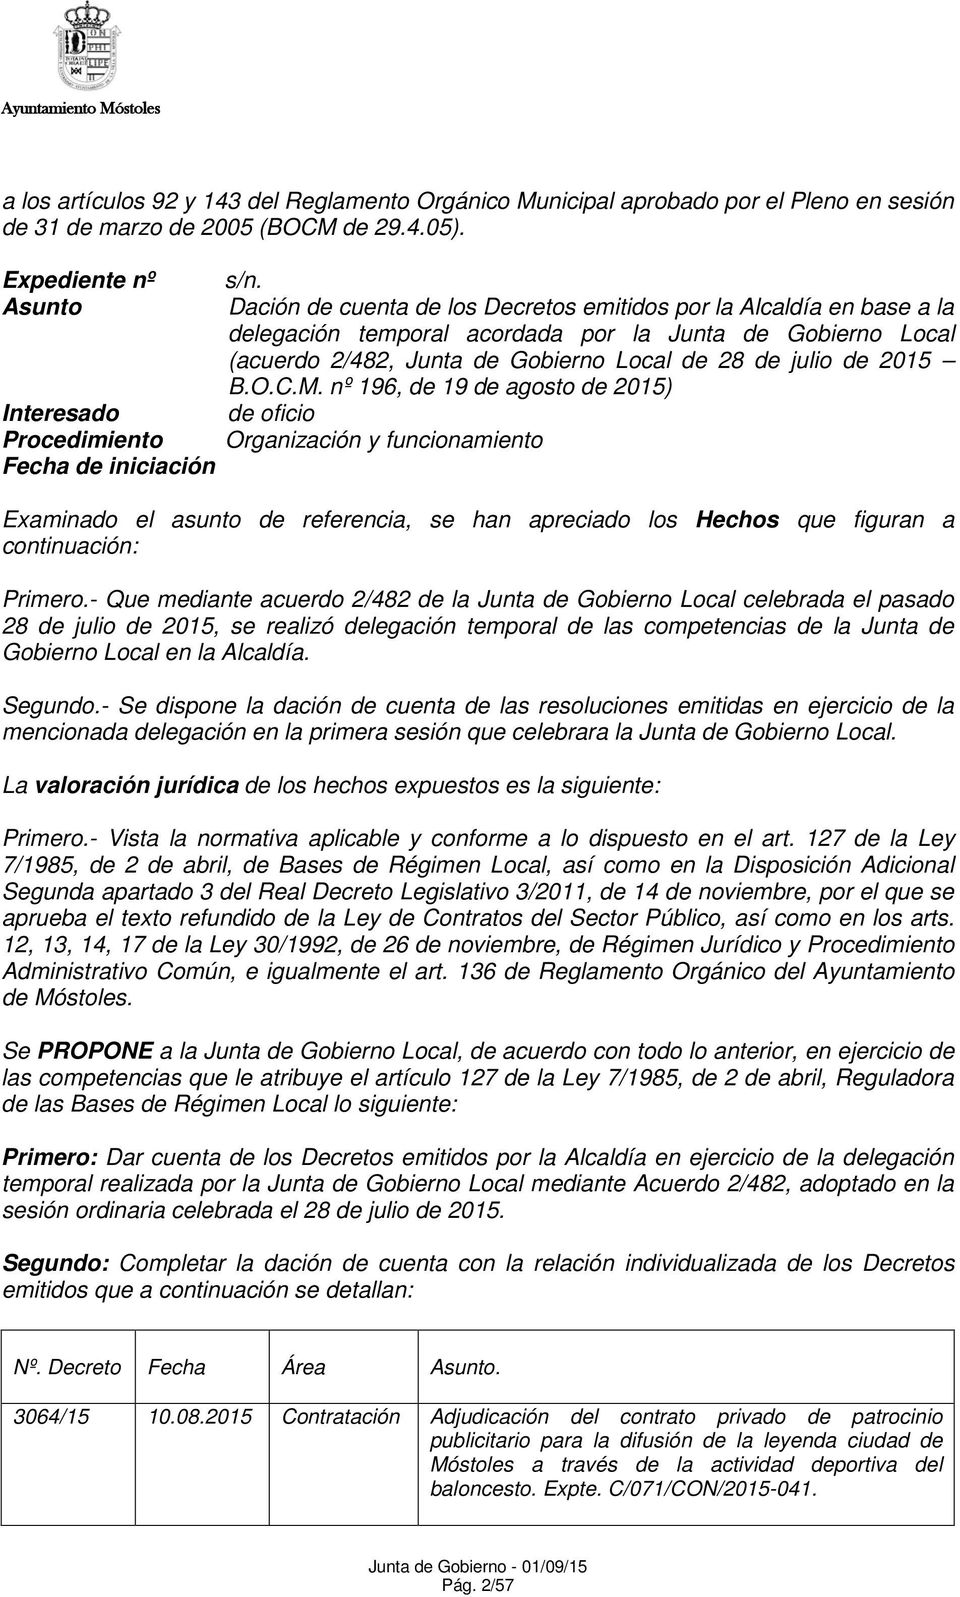 Dación de cuenta de los Decretos emitidos por la Alcaldía en base a la delegación temporal acordada por la Junta de Gobierno Local (acuerdo 2/482, Junta de Gobierno Local de 28 de julio de 2015 B.O.C.